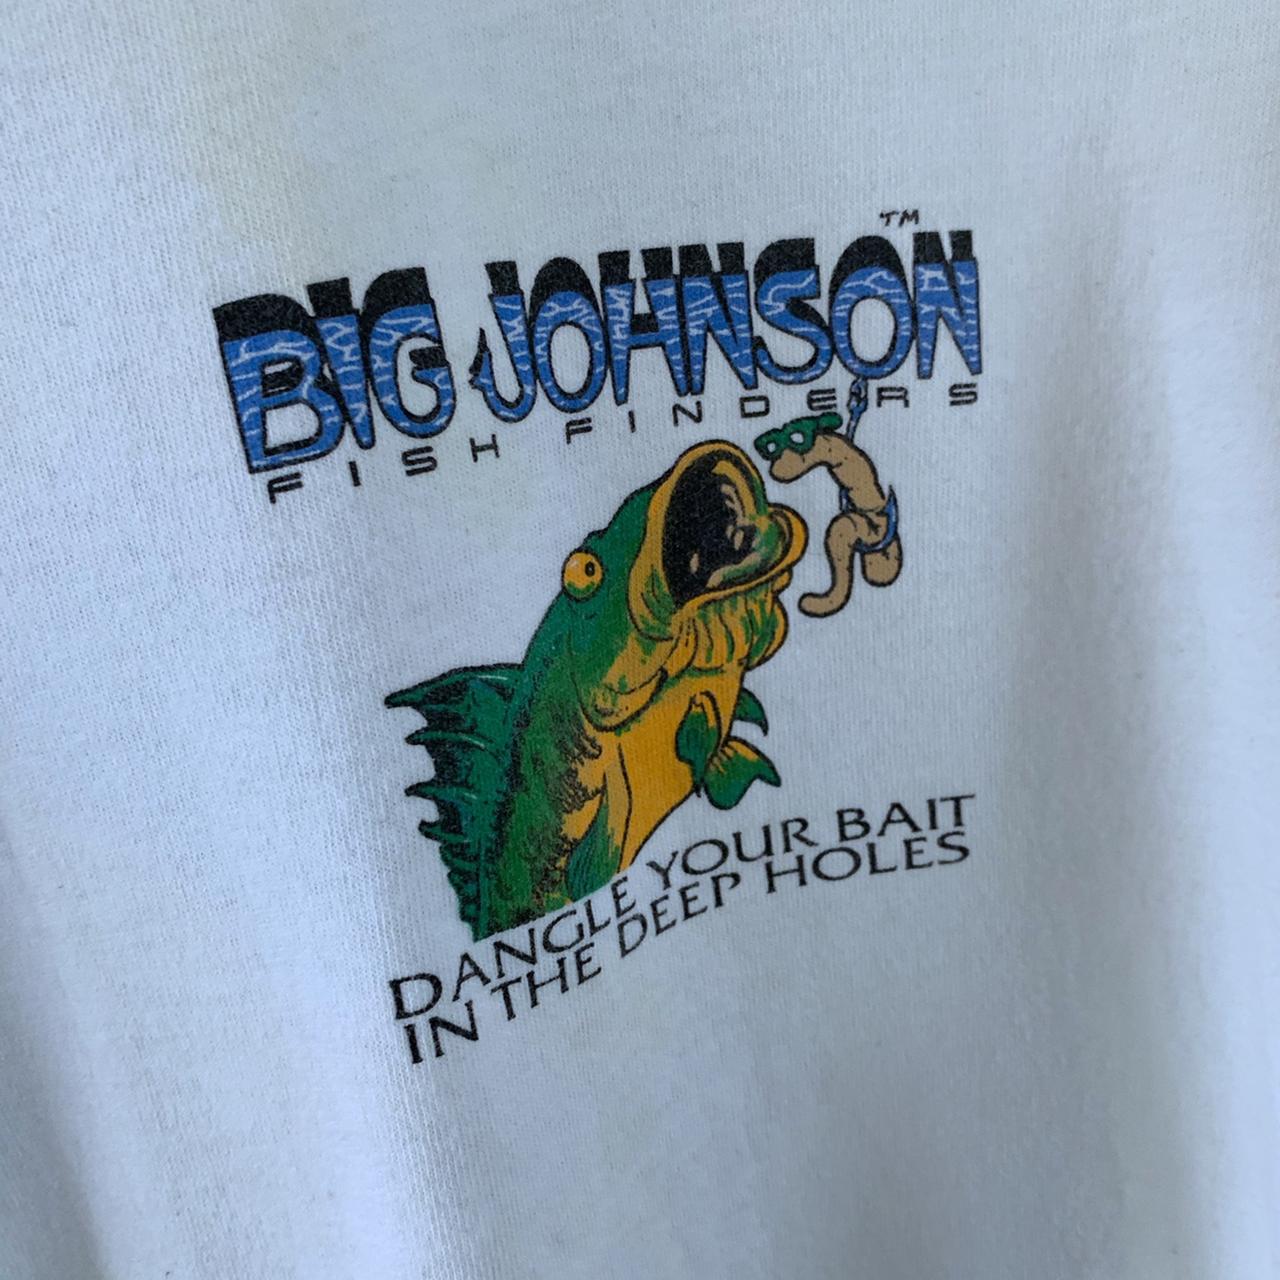  Big Johnsons Bait Shack Funny Tshirt : Clothing, Shoes